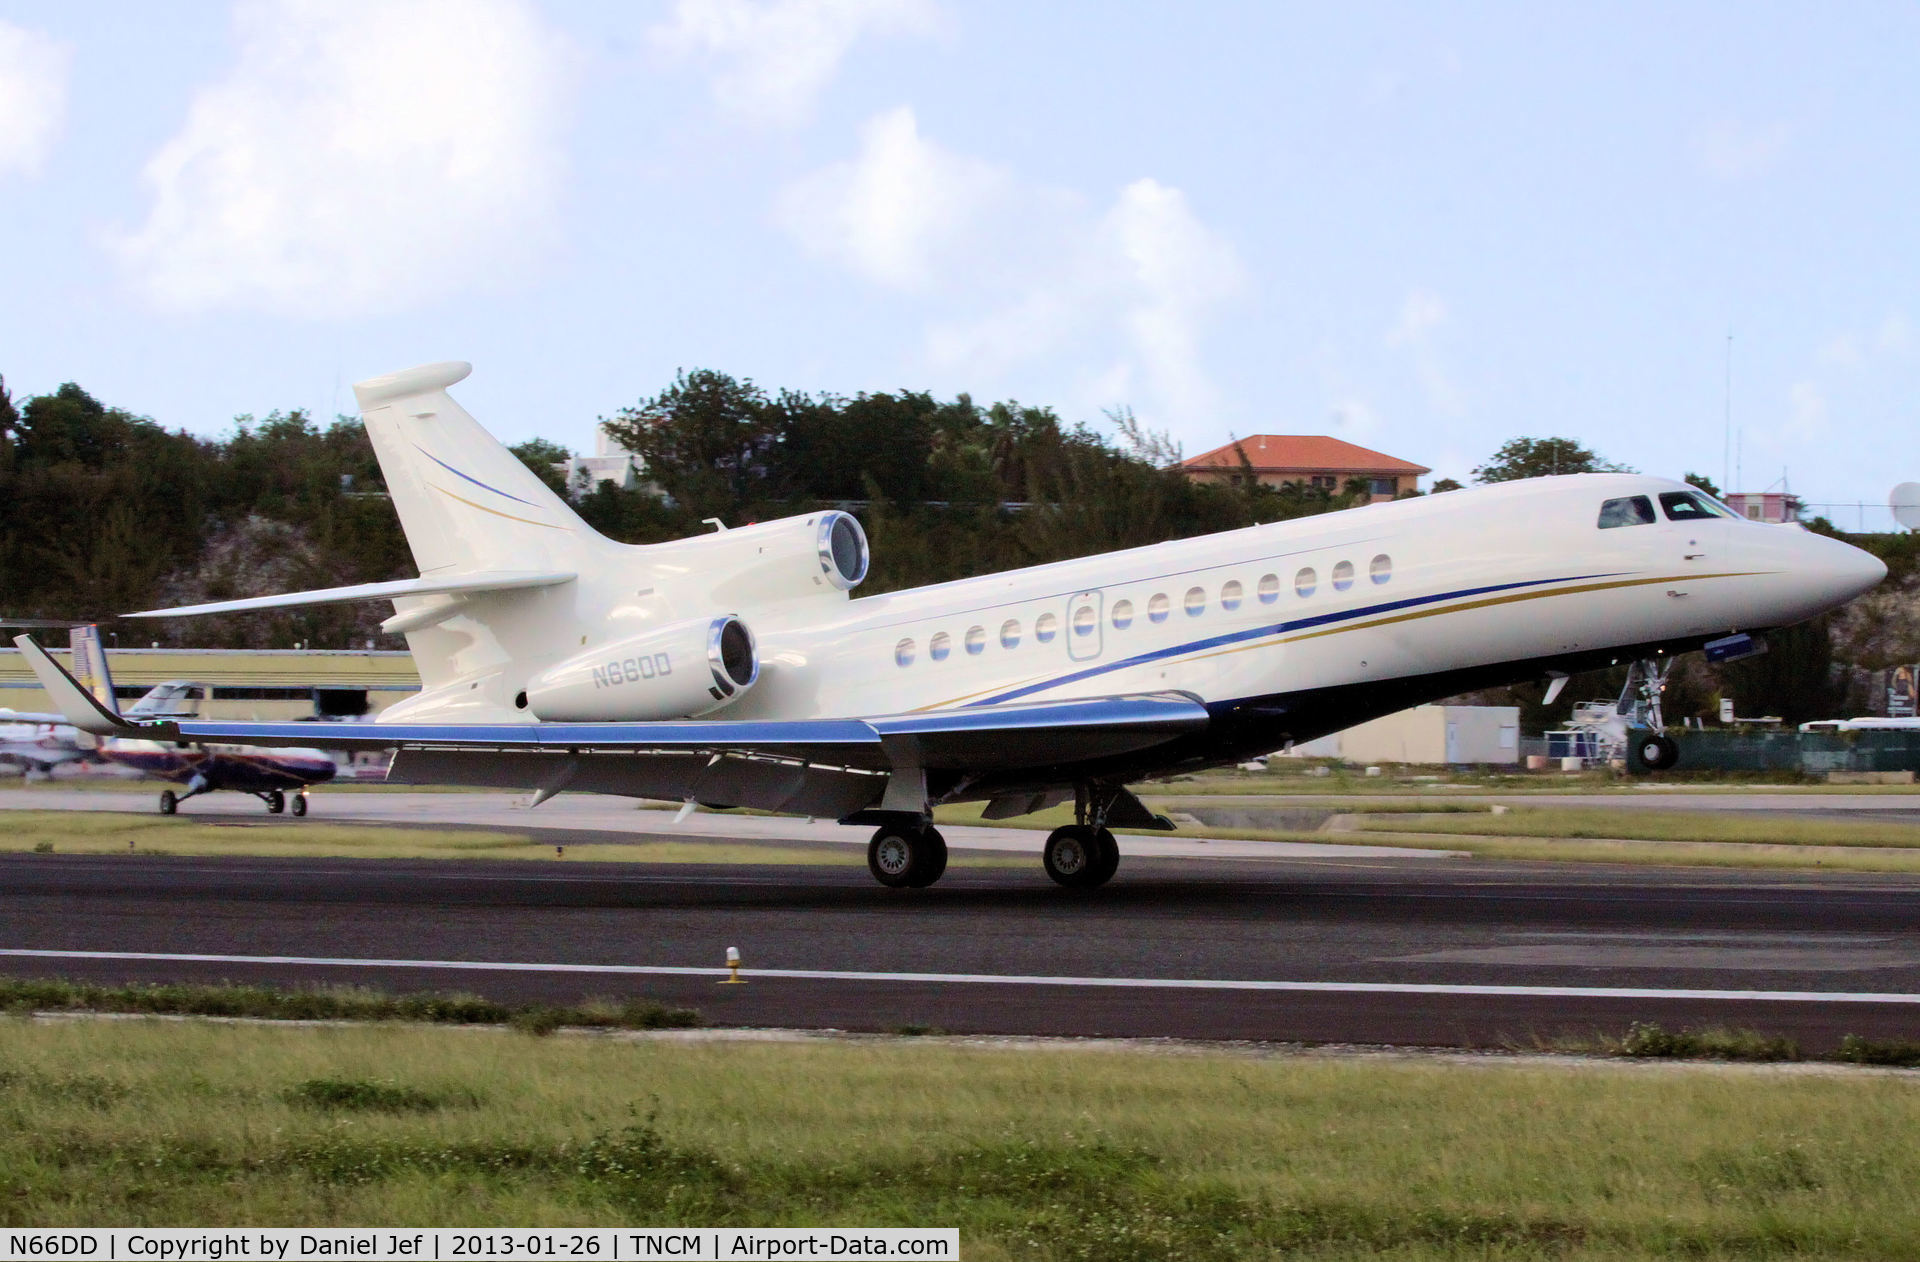 N66DD, 1998 Gulfstream Aerospace G-IV C/N 1355, N66DD